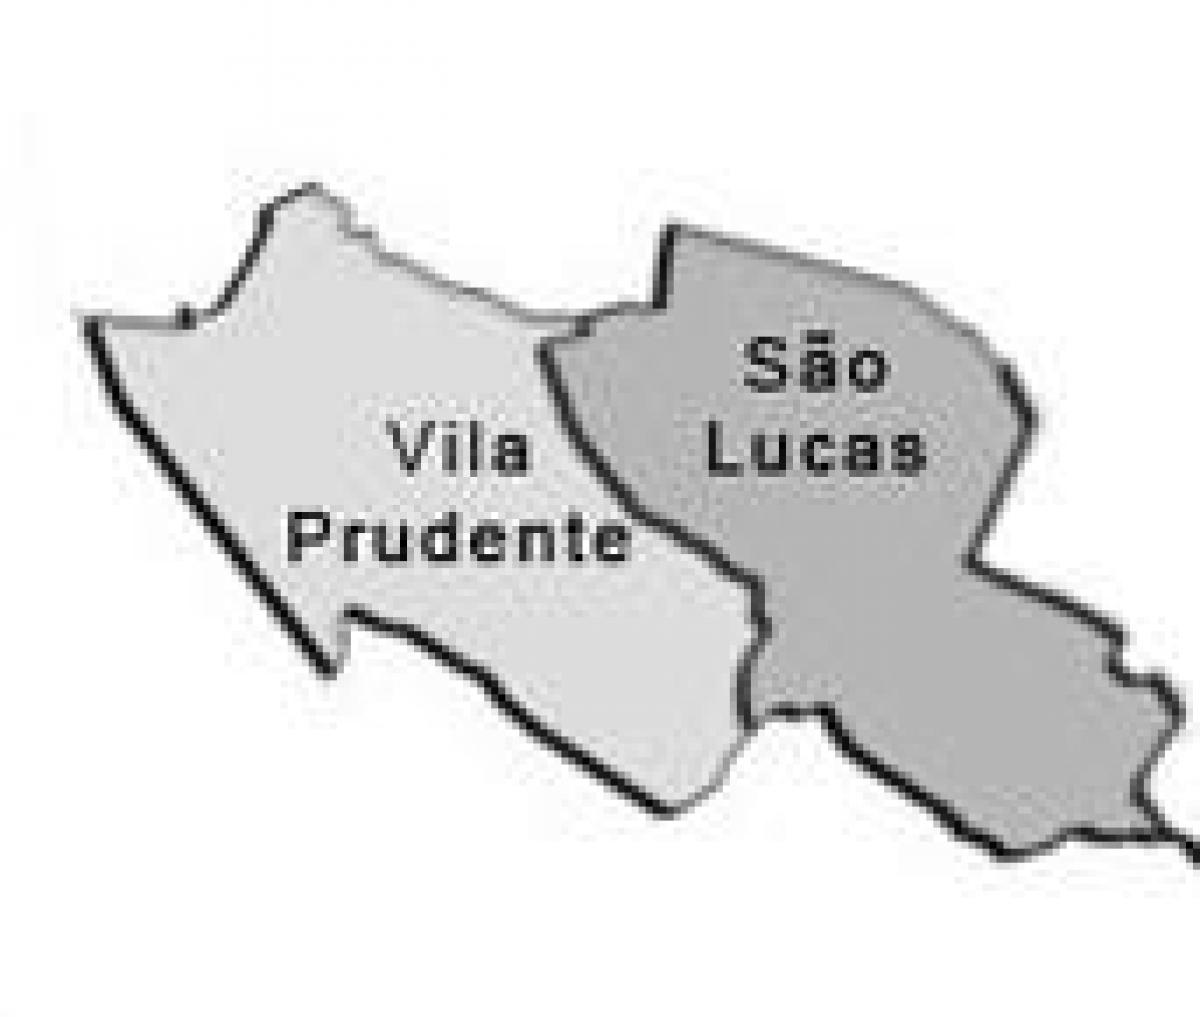 지도 빌라 프루덴테 sub-현